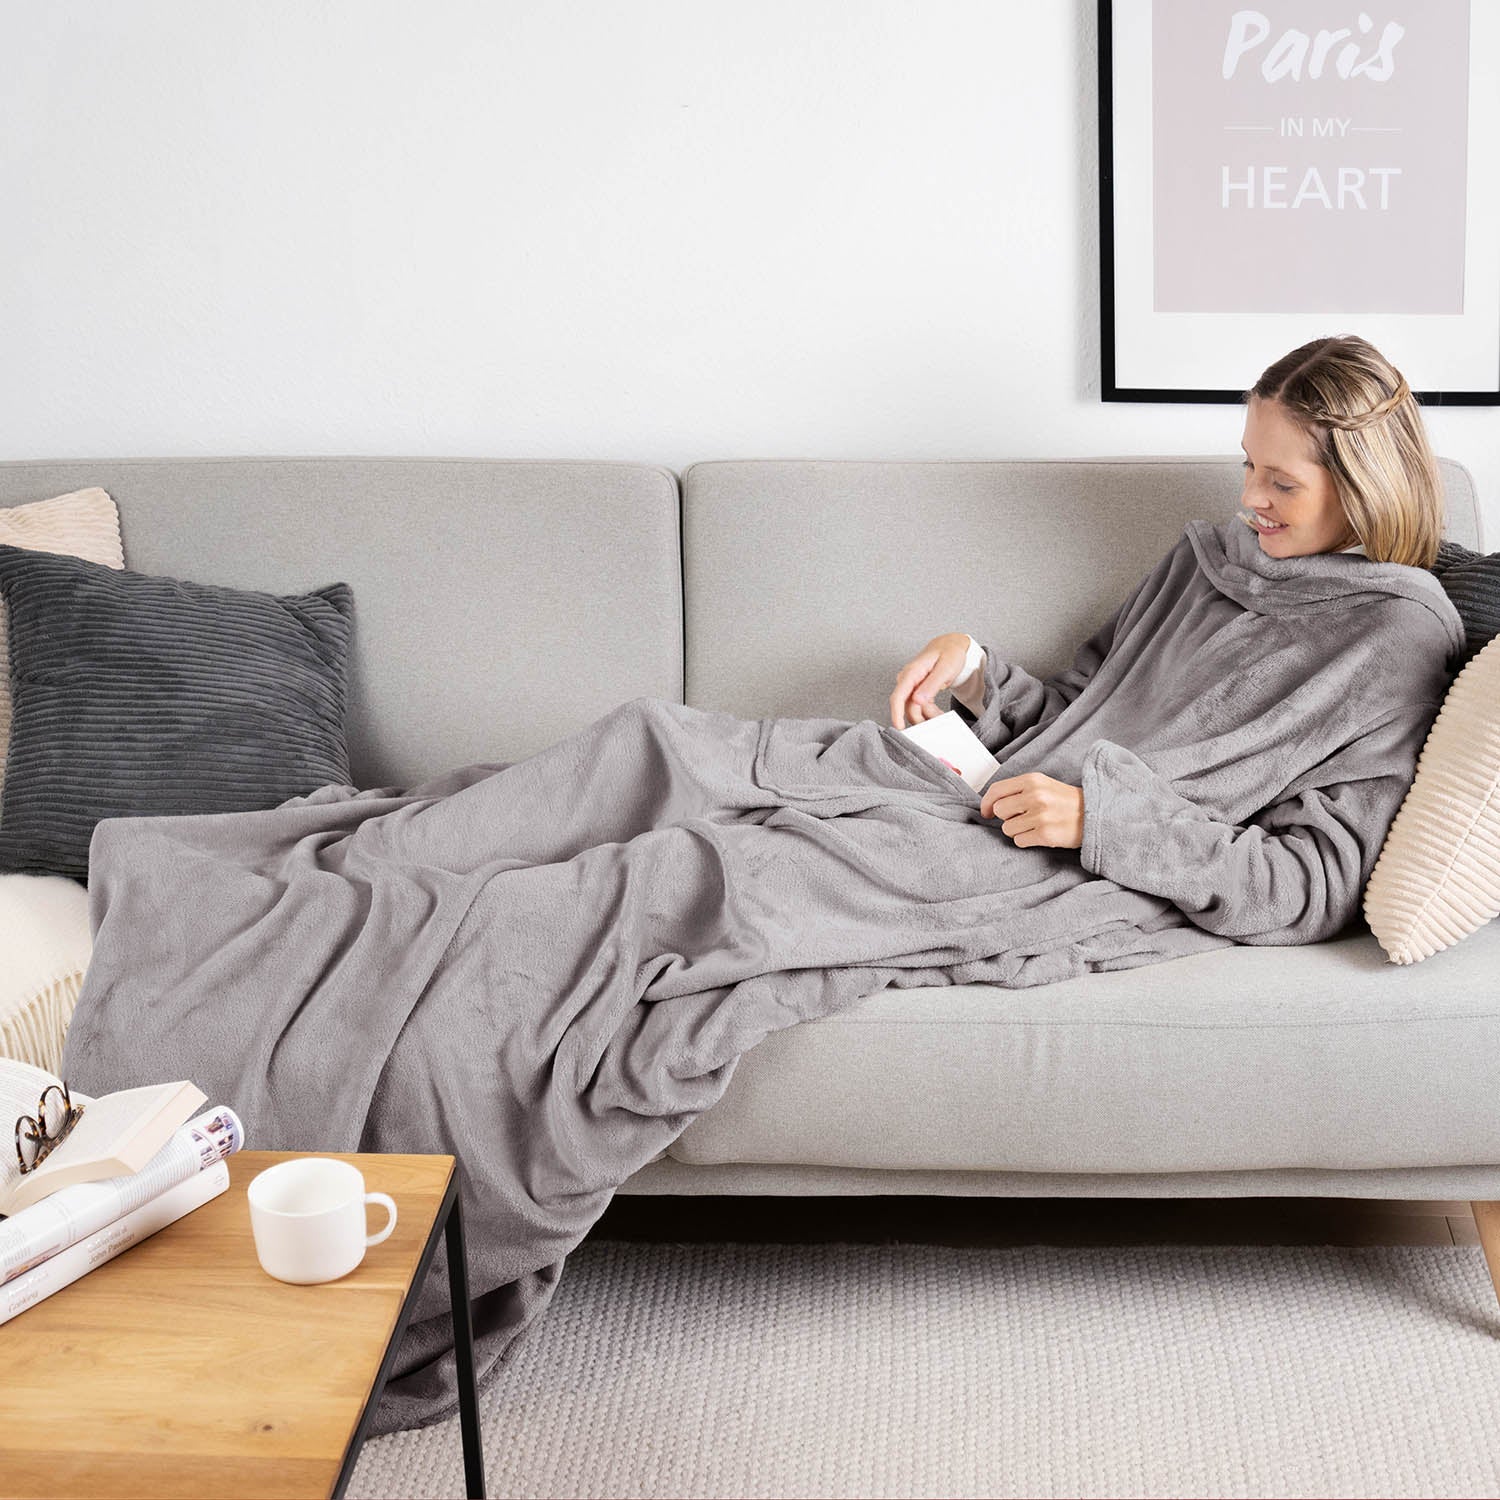 Frau liegt auf einem grauen Sofa eingehüllt in ein grauen flauschiges Kleidungsstück und liest ein Buch mit einer Tasse auf einem Holztisch daneben.